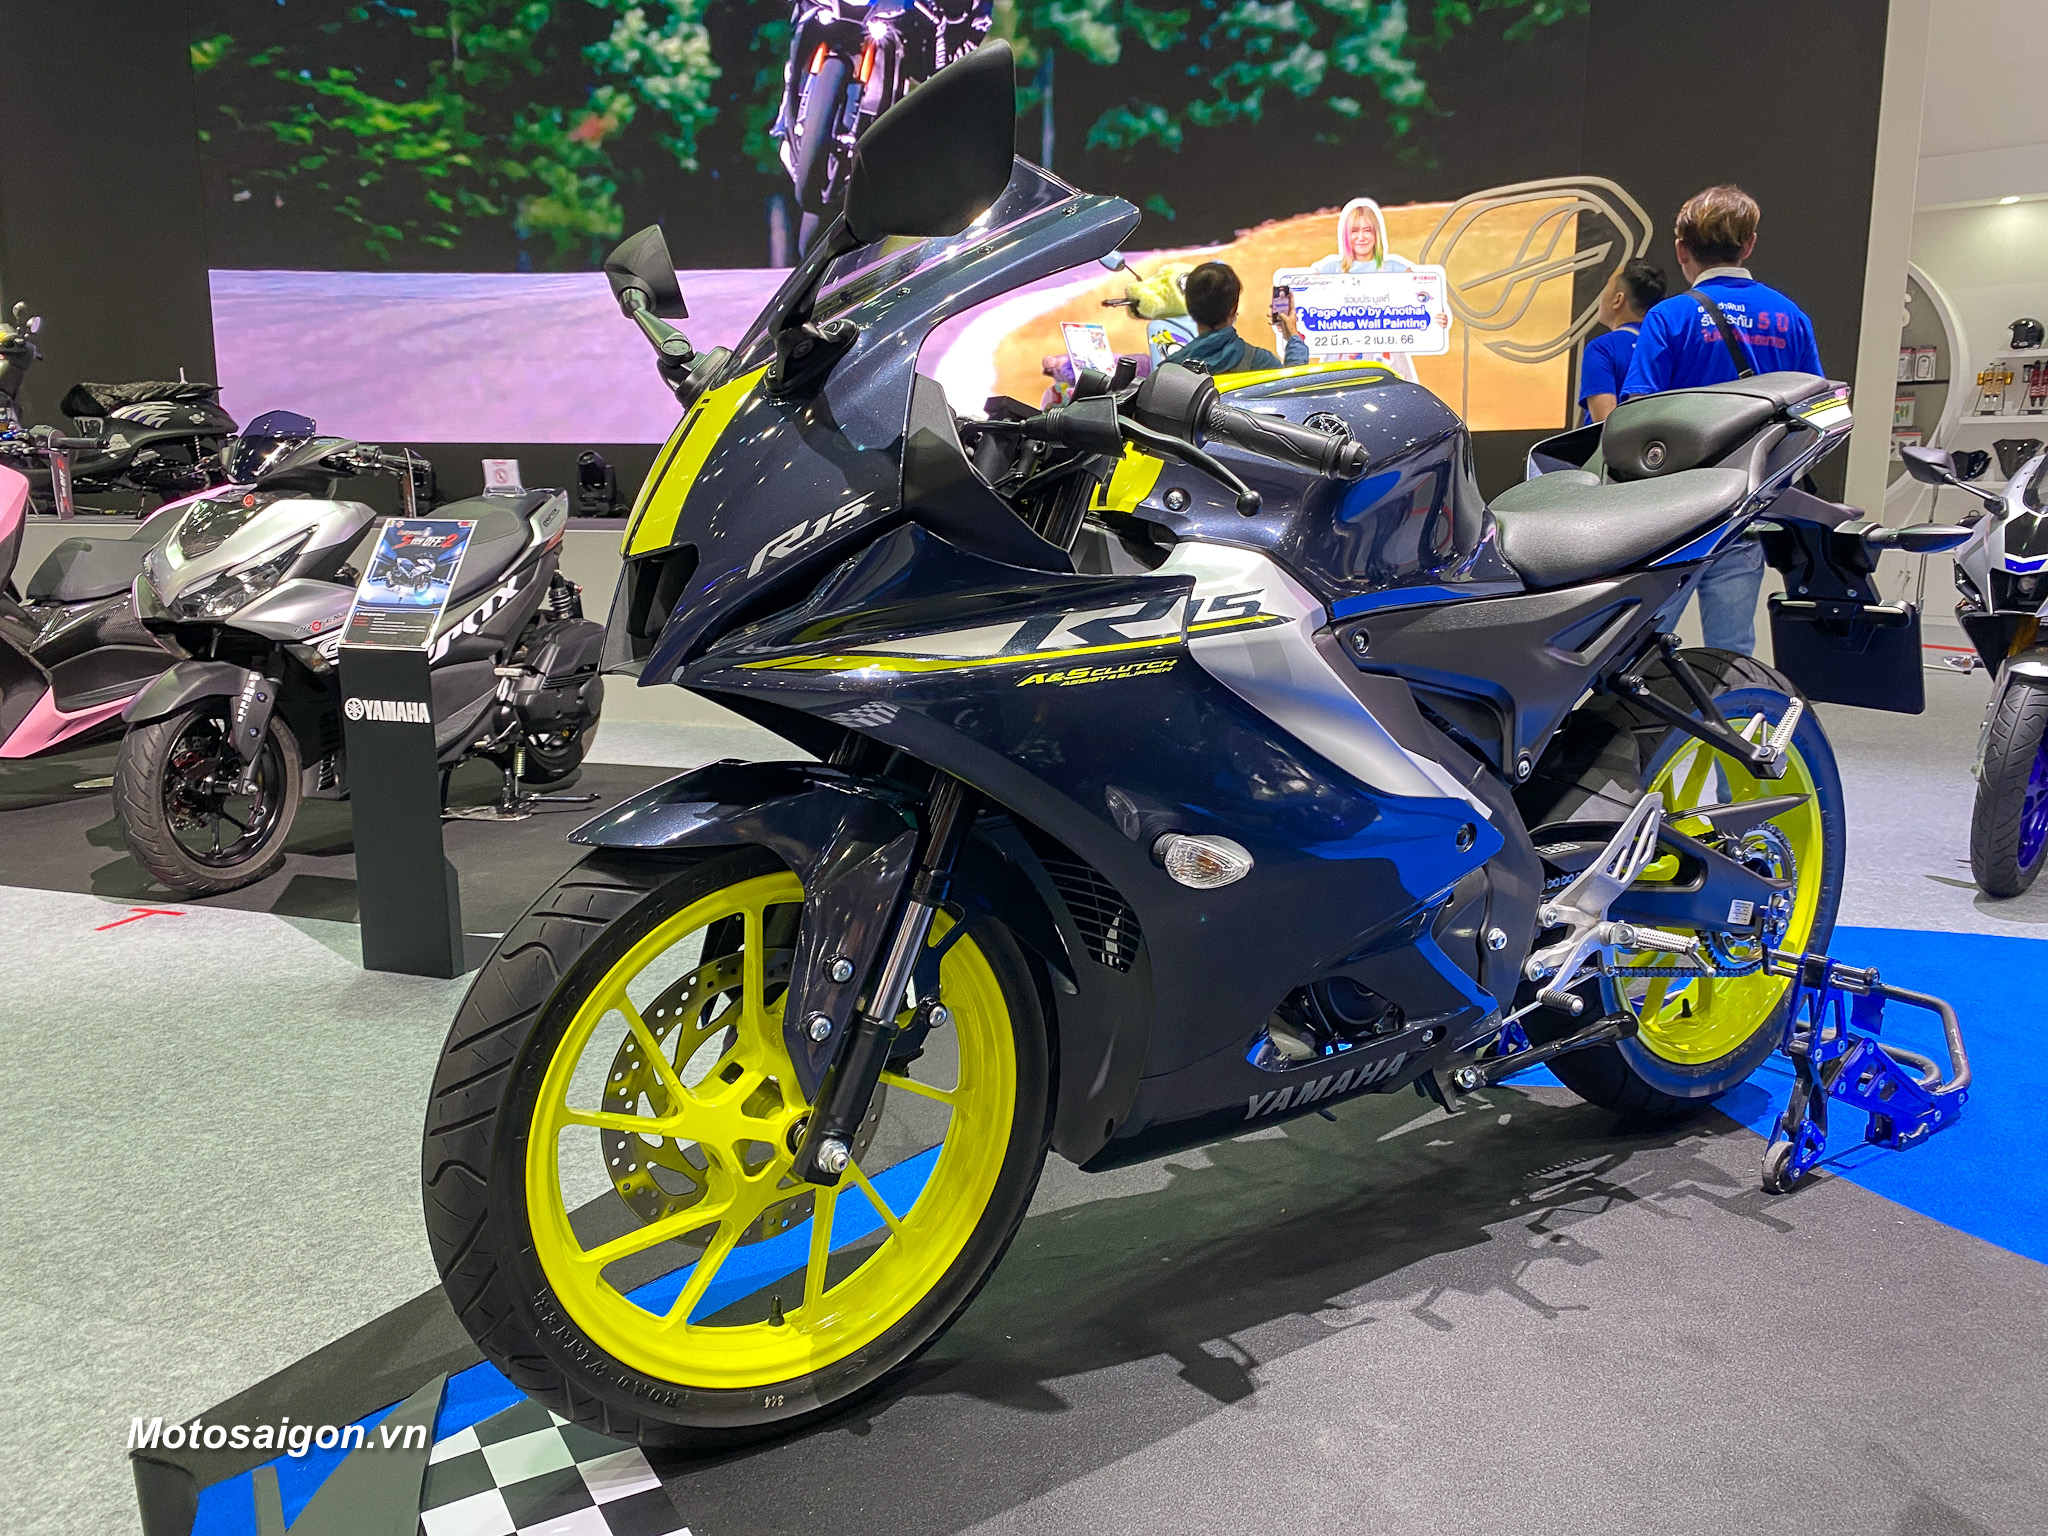 R15 v4 2023 mới nhất bất ngờ được Yamaha ra mắt 4 phiên bản mới